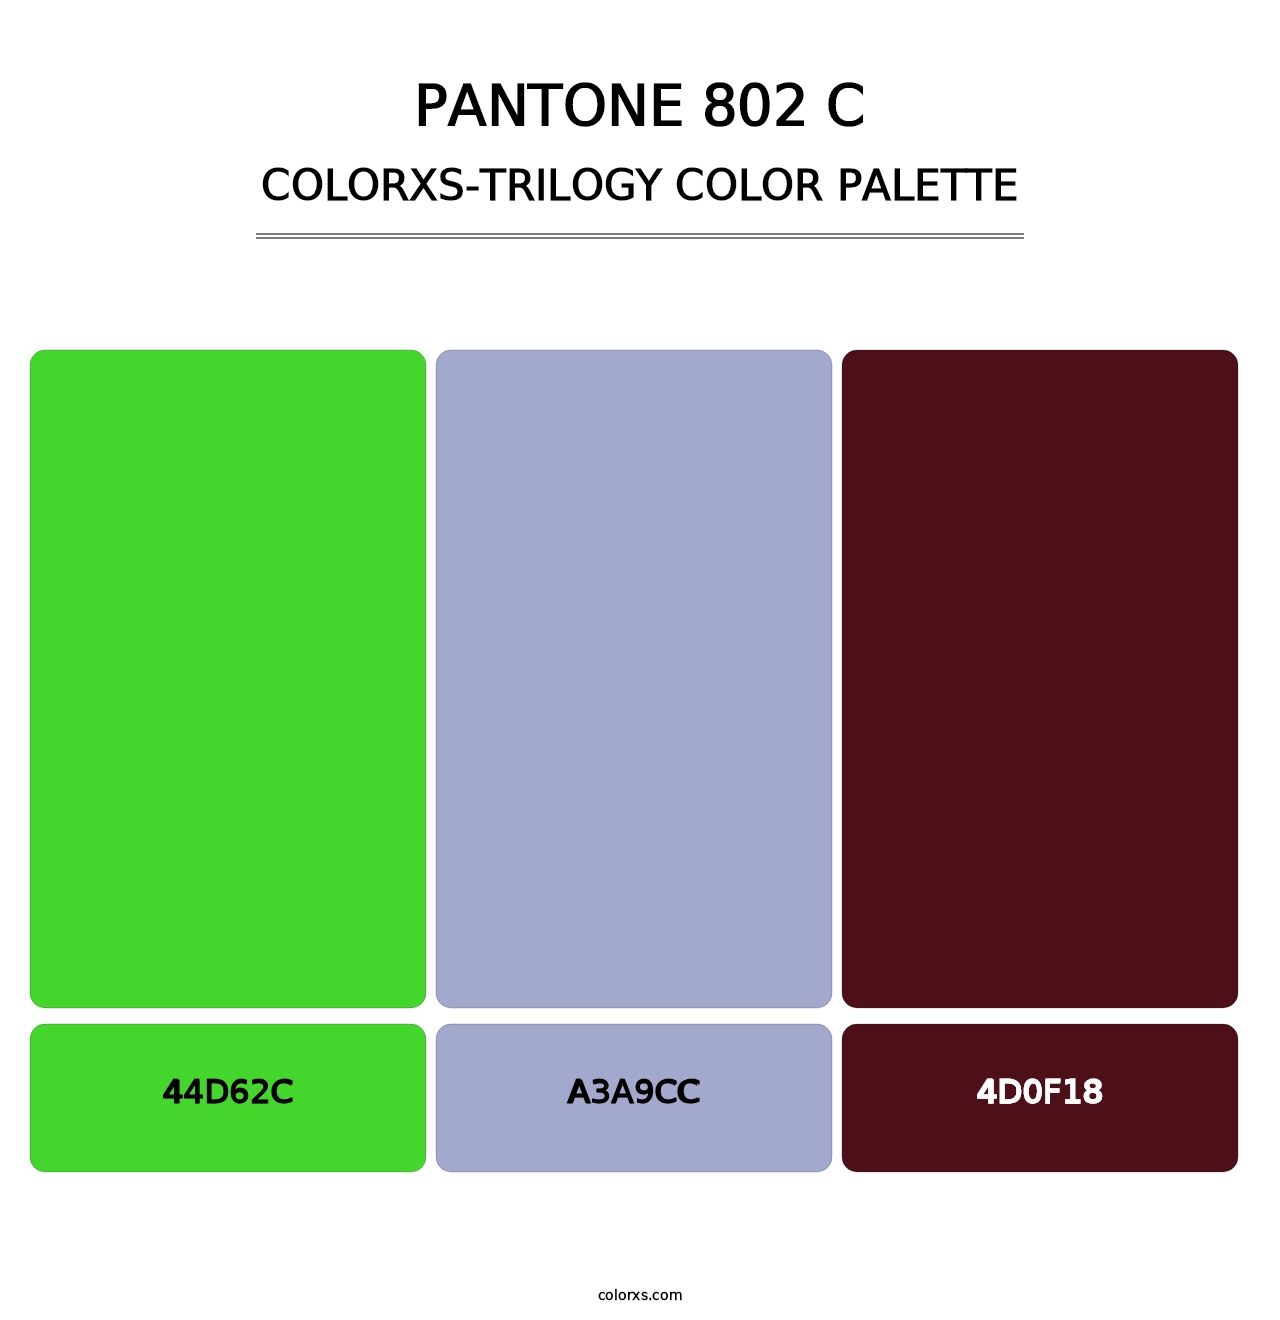 PANTONE 802 C - Colorxs Trilogy Palette